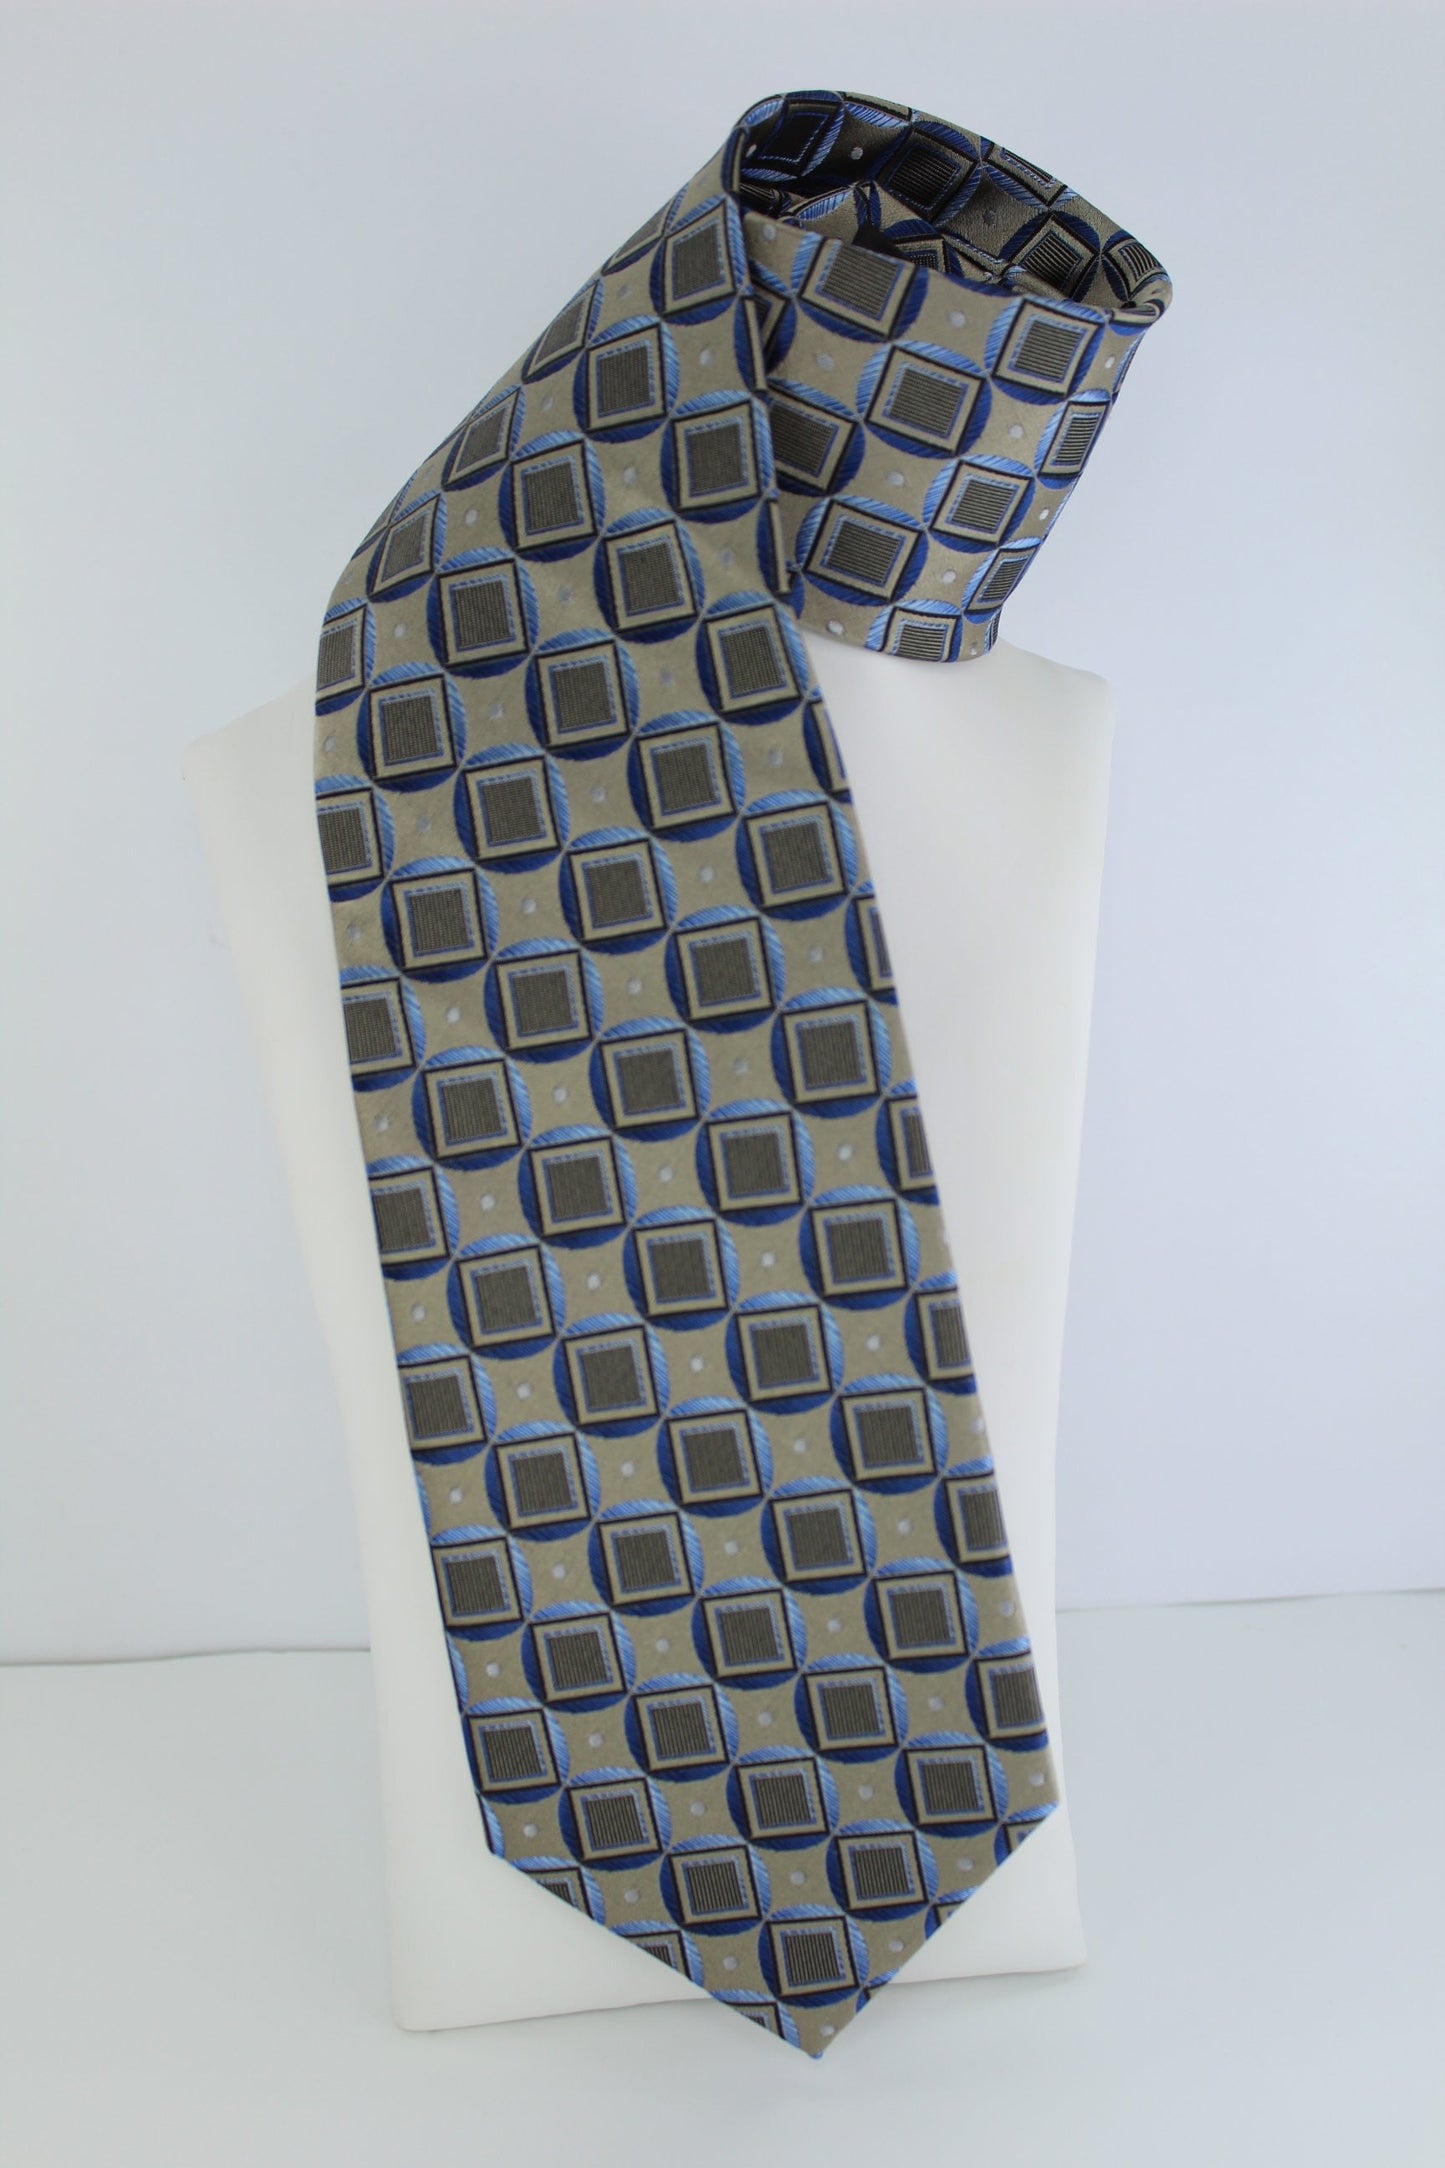 Platinum Designs Stainless Steel Blue Silk Tie - Stunning Geometric excellent condition